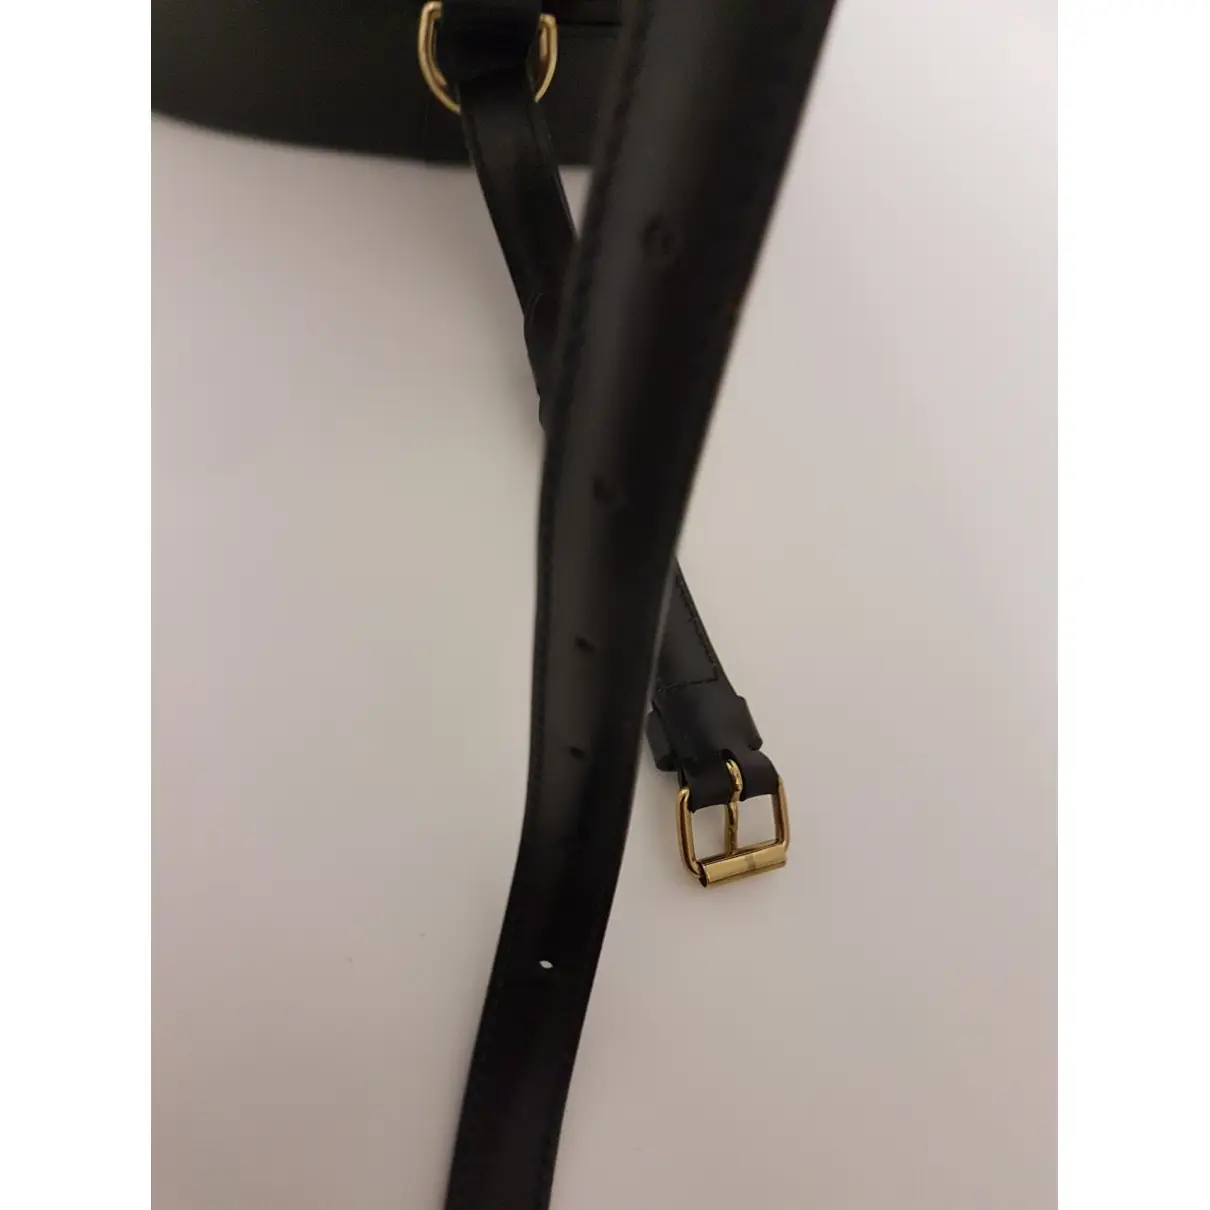 Buy Louis Vuitton Randonnée leather backpack online - Vintage